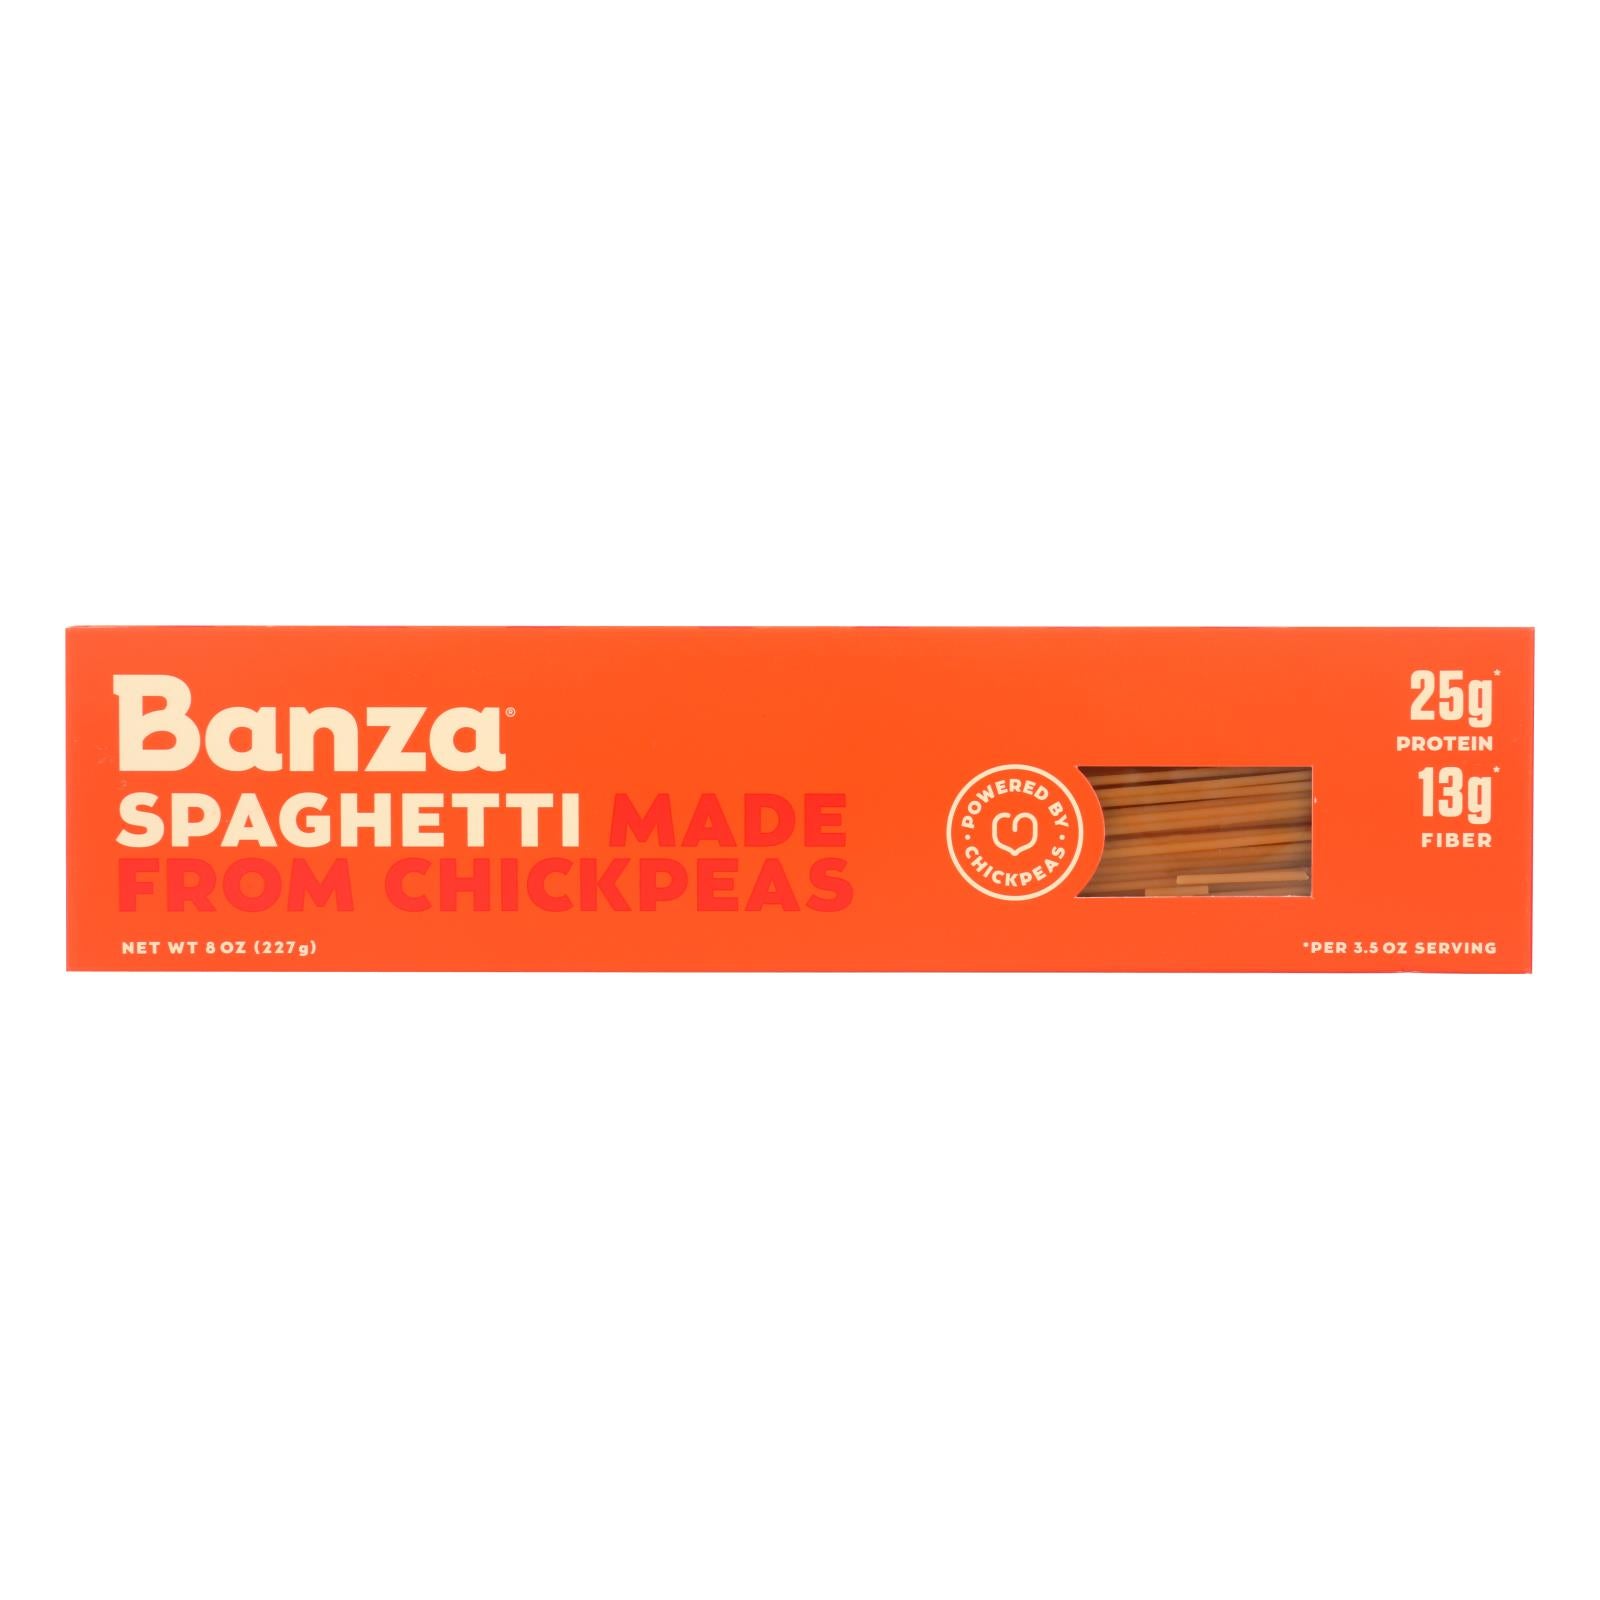 Banza, Banza - Chickpea Pasta - Spaghetti - Case of 12 - 8 oz. (Pack of 12)